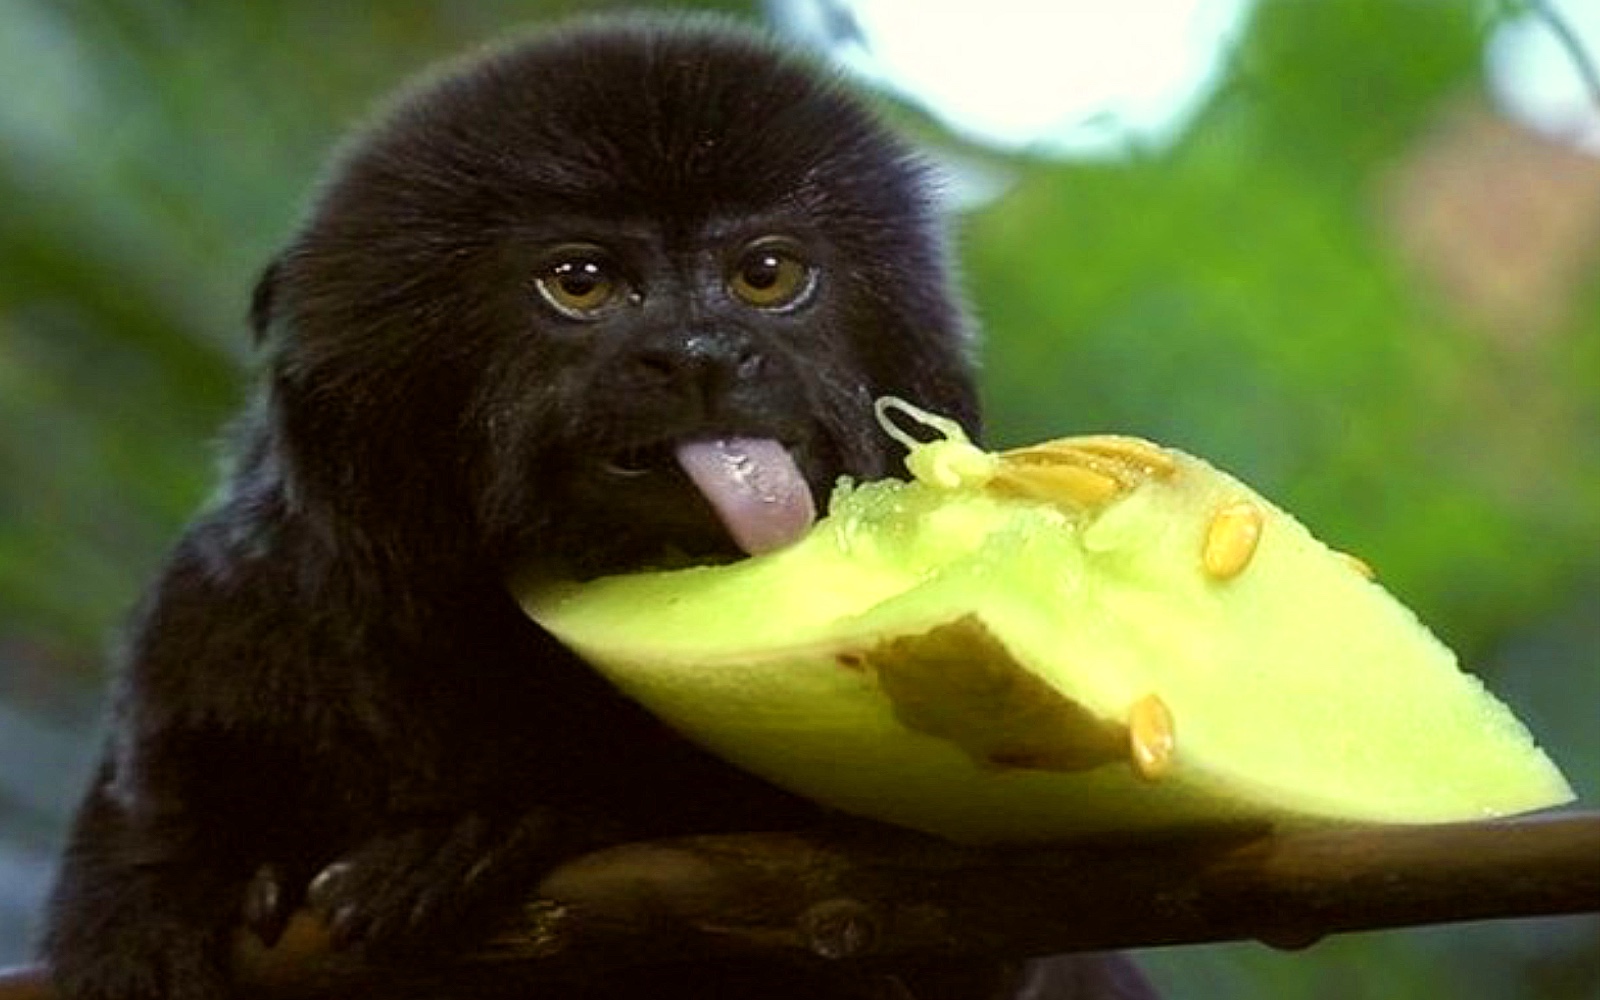 A monkey eats a melon